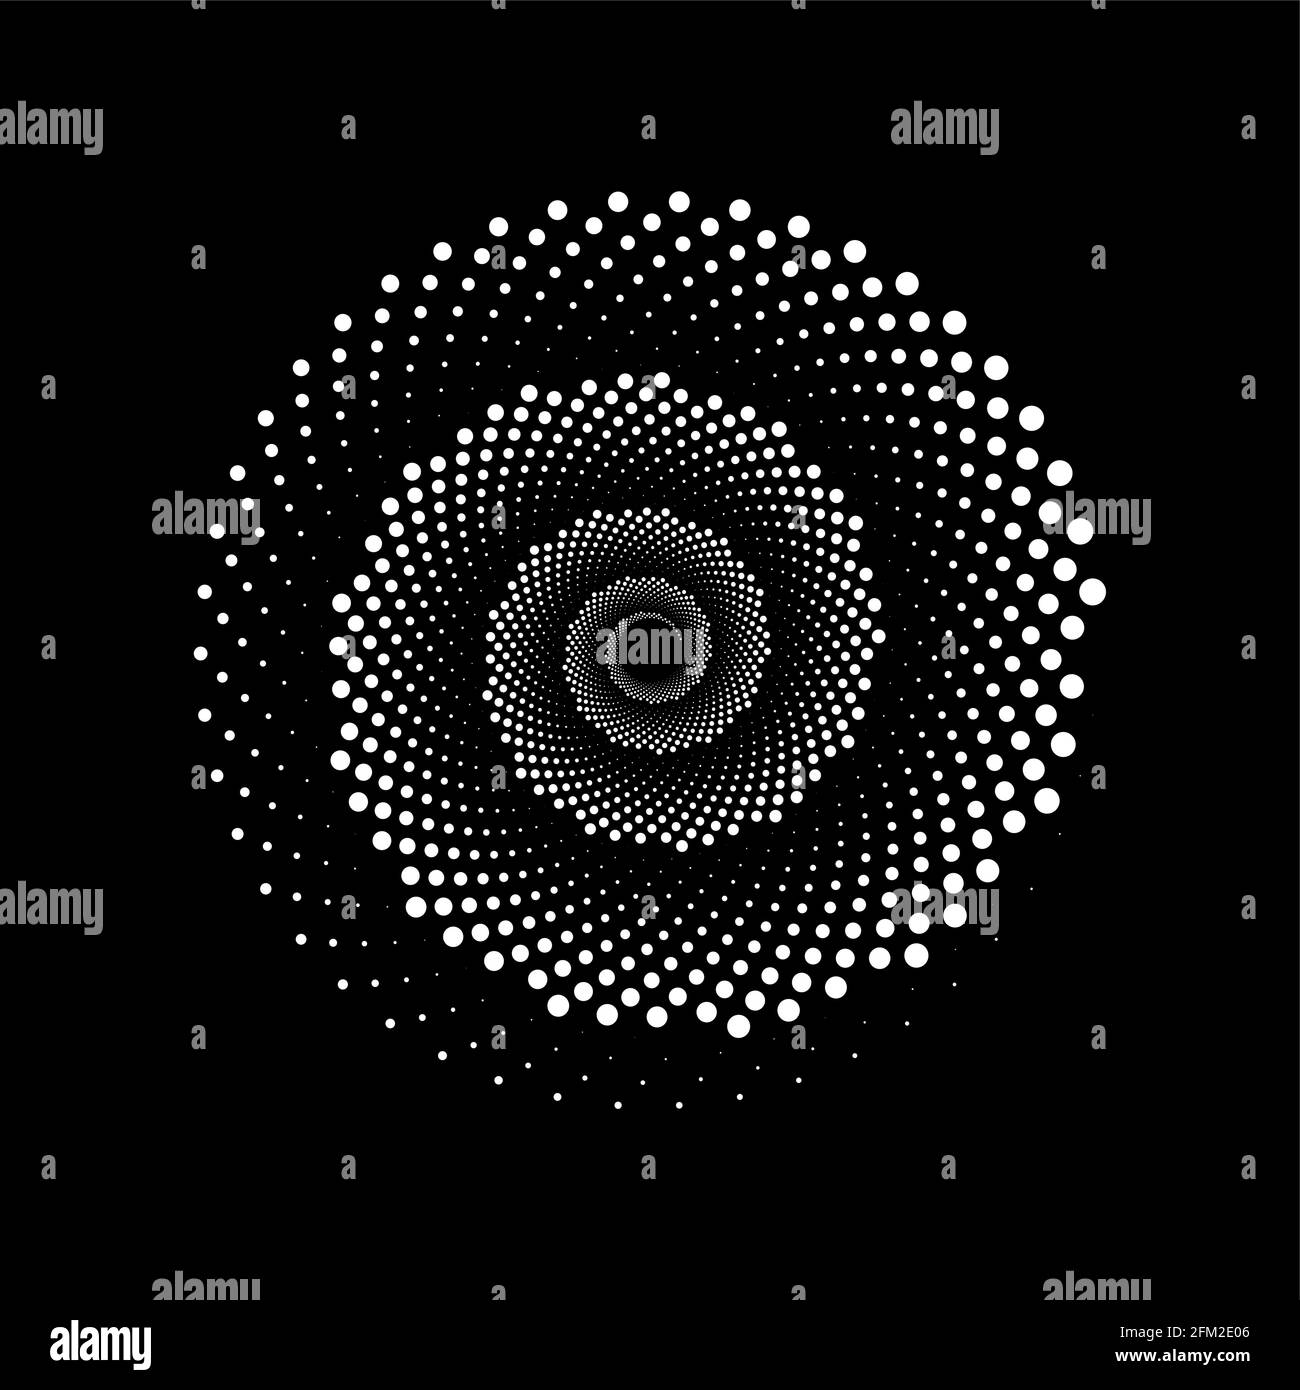 Weiße Punktspirale im monochromen Stil. Design-Helix für abstrakten Hintergrund. Abstrakte spiralförmige Klangwelle mit dynamischen Rhythmuspunkten. Vektorgrafik monochrom Stock Vektor